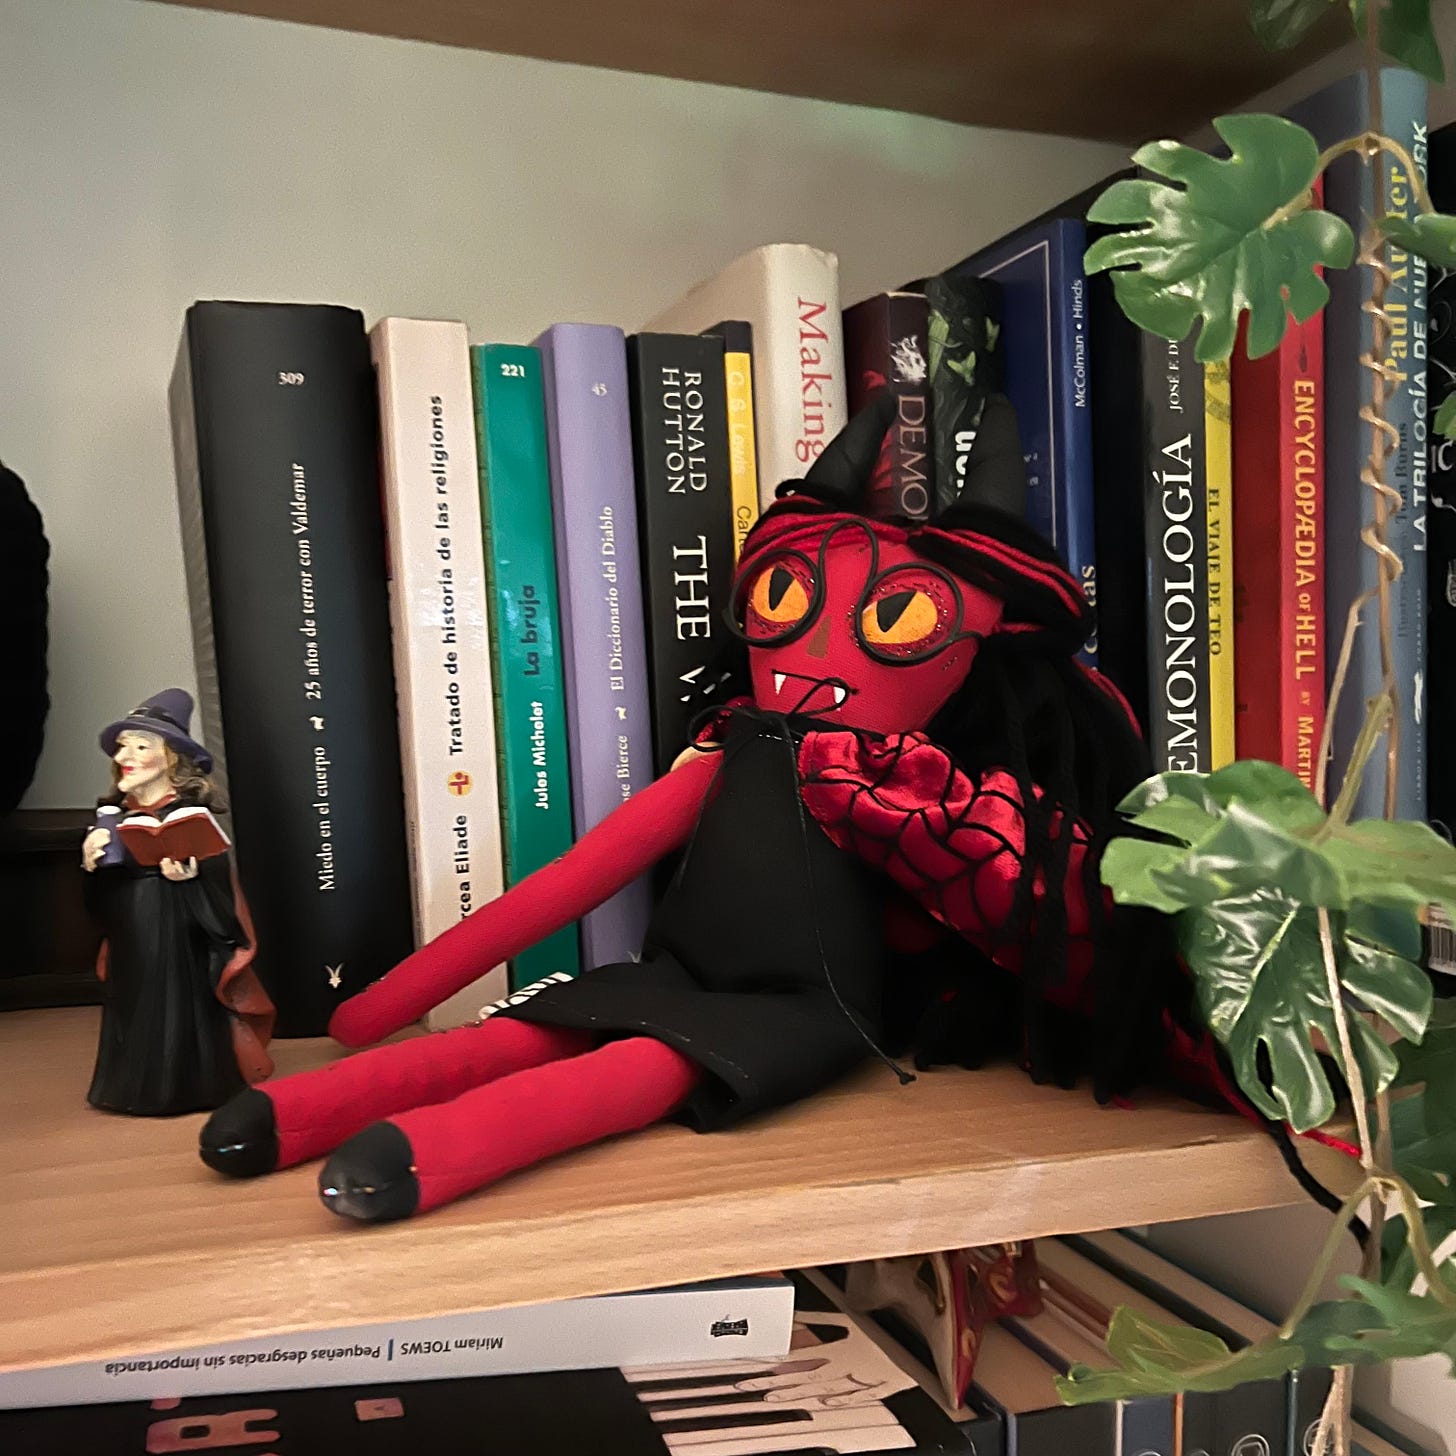 El libro Hacer el mal detrás de una muñeca que representa un demonio.